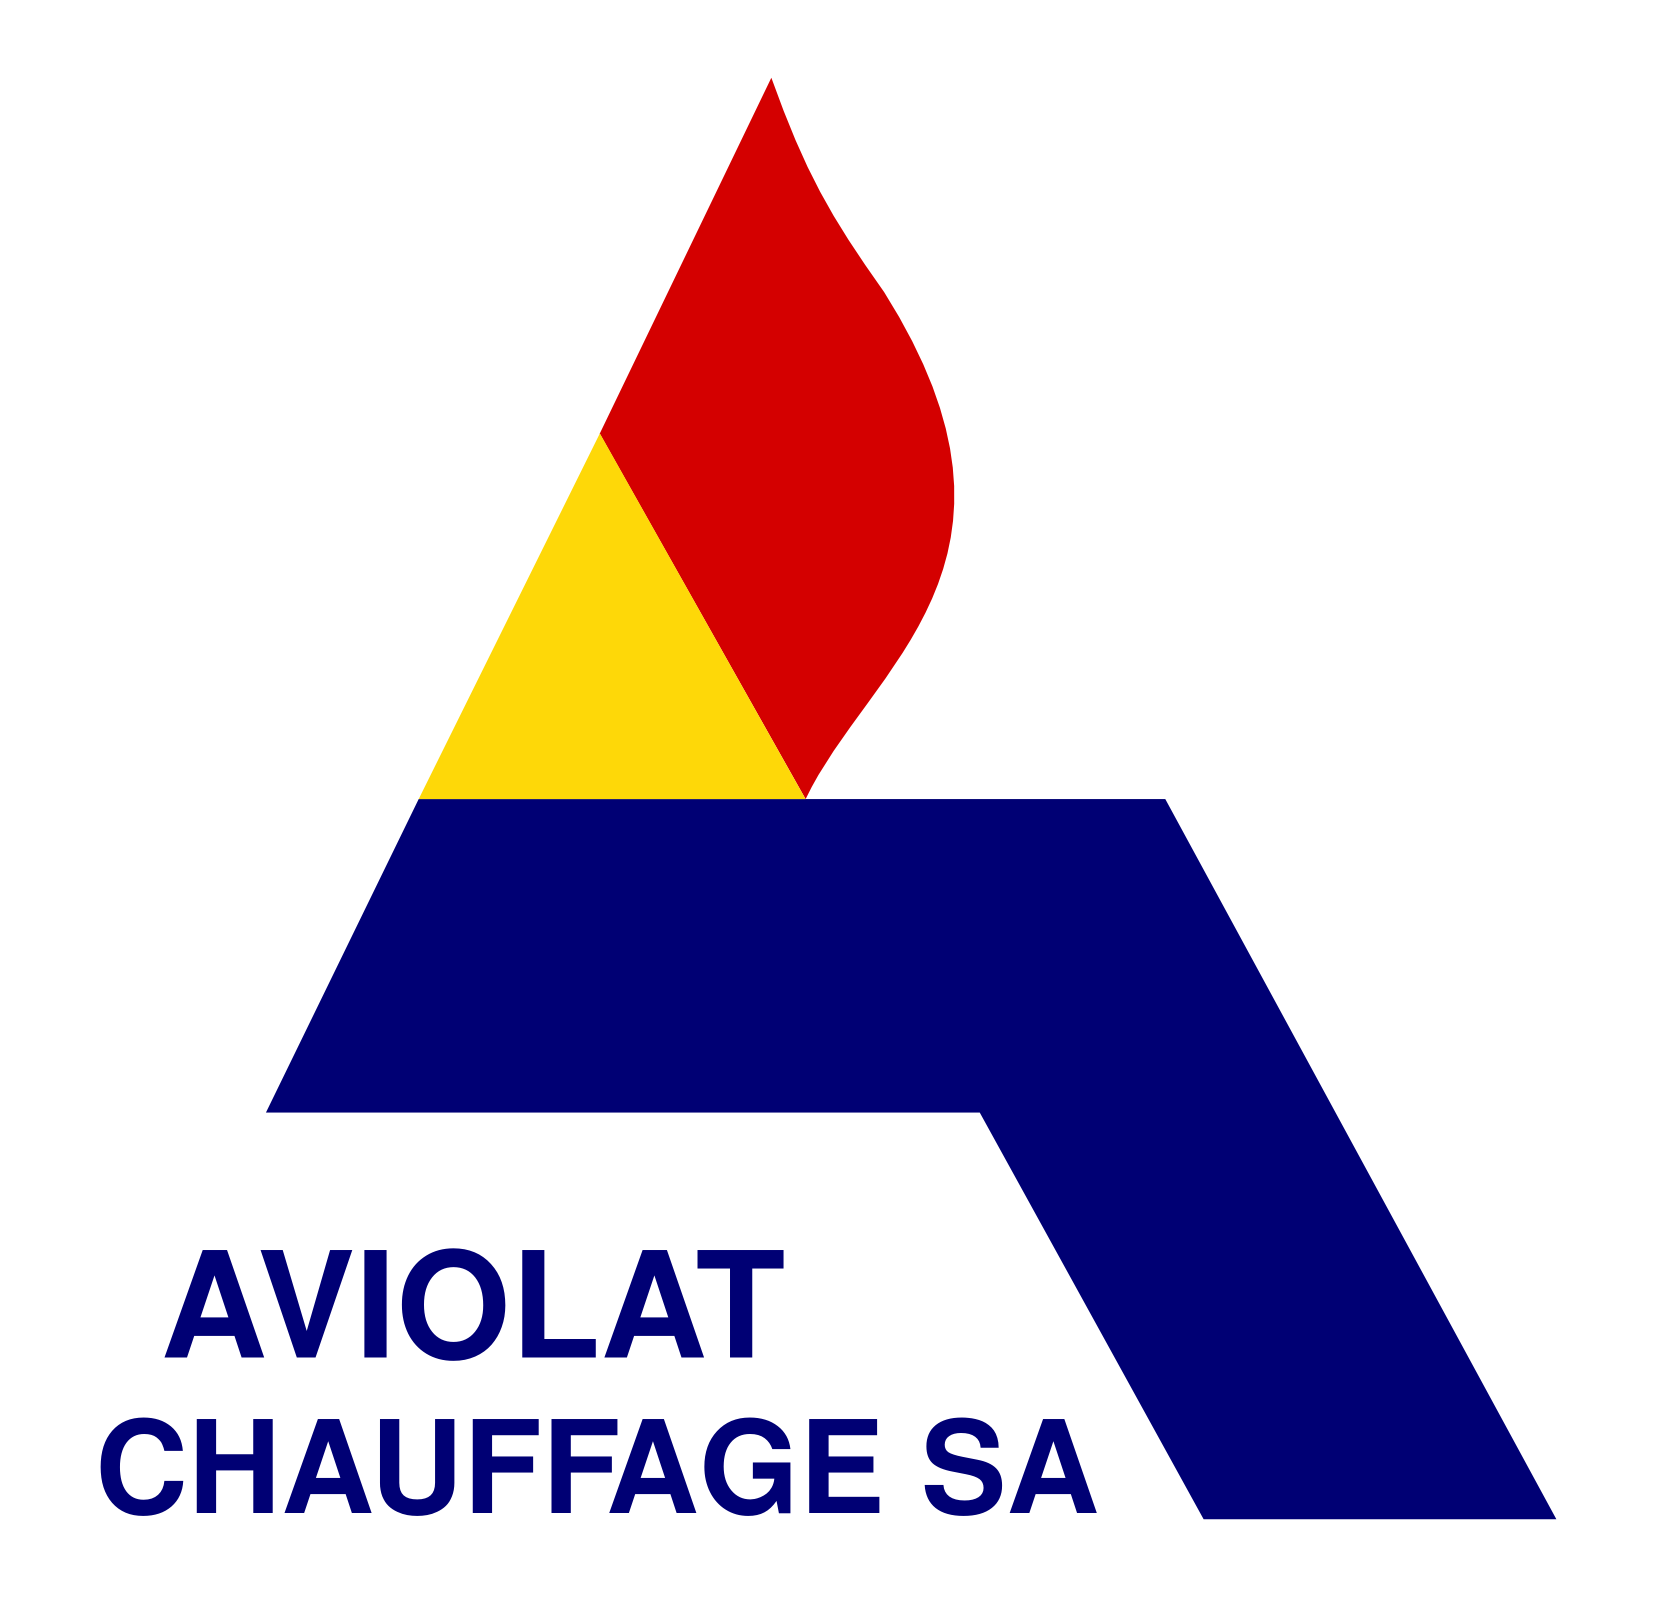 Aviolat Chauffage SA